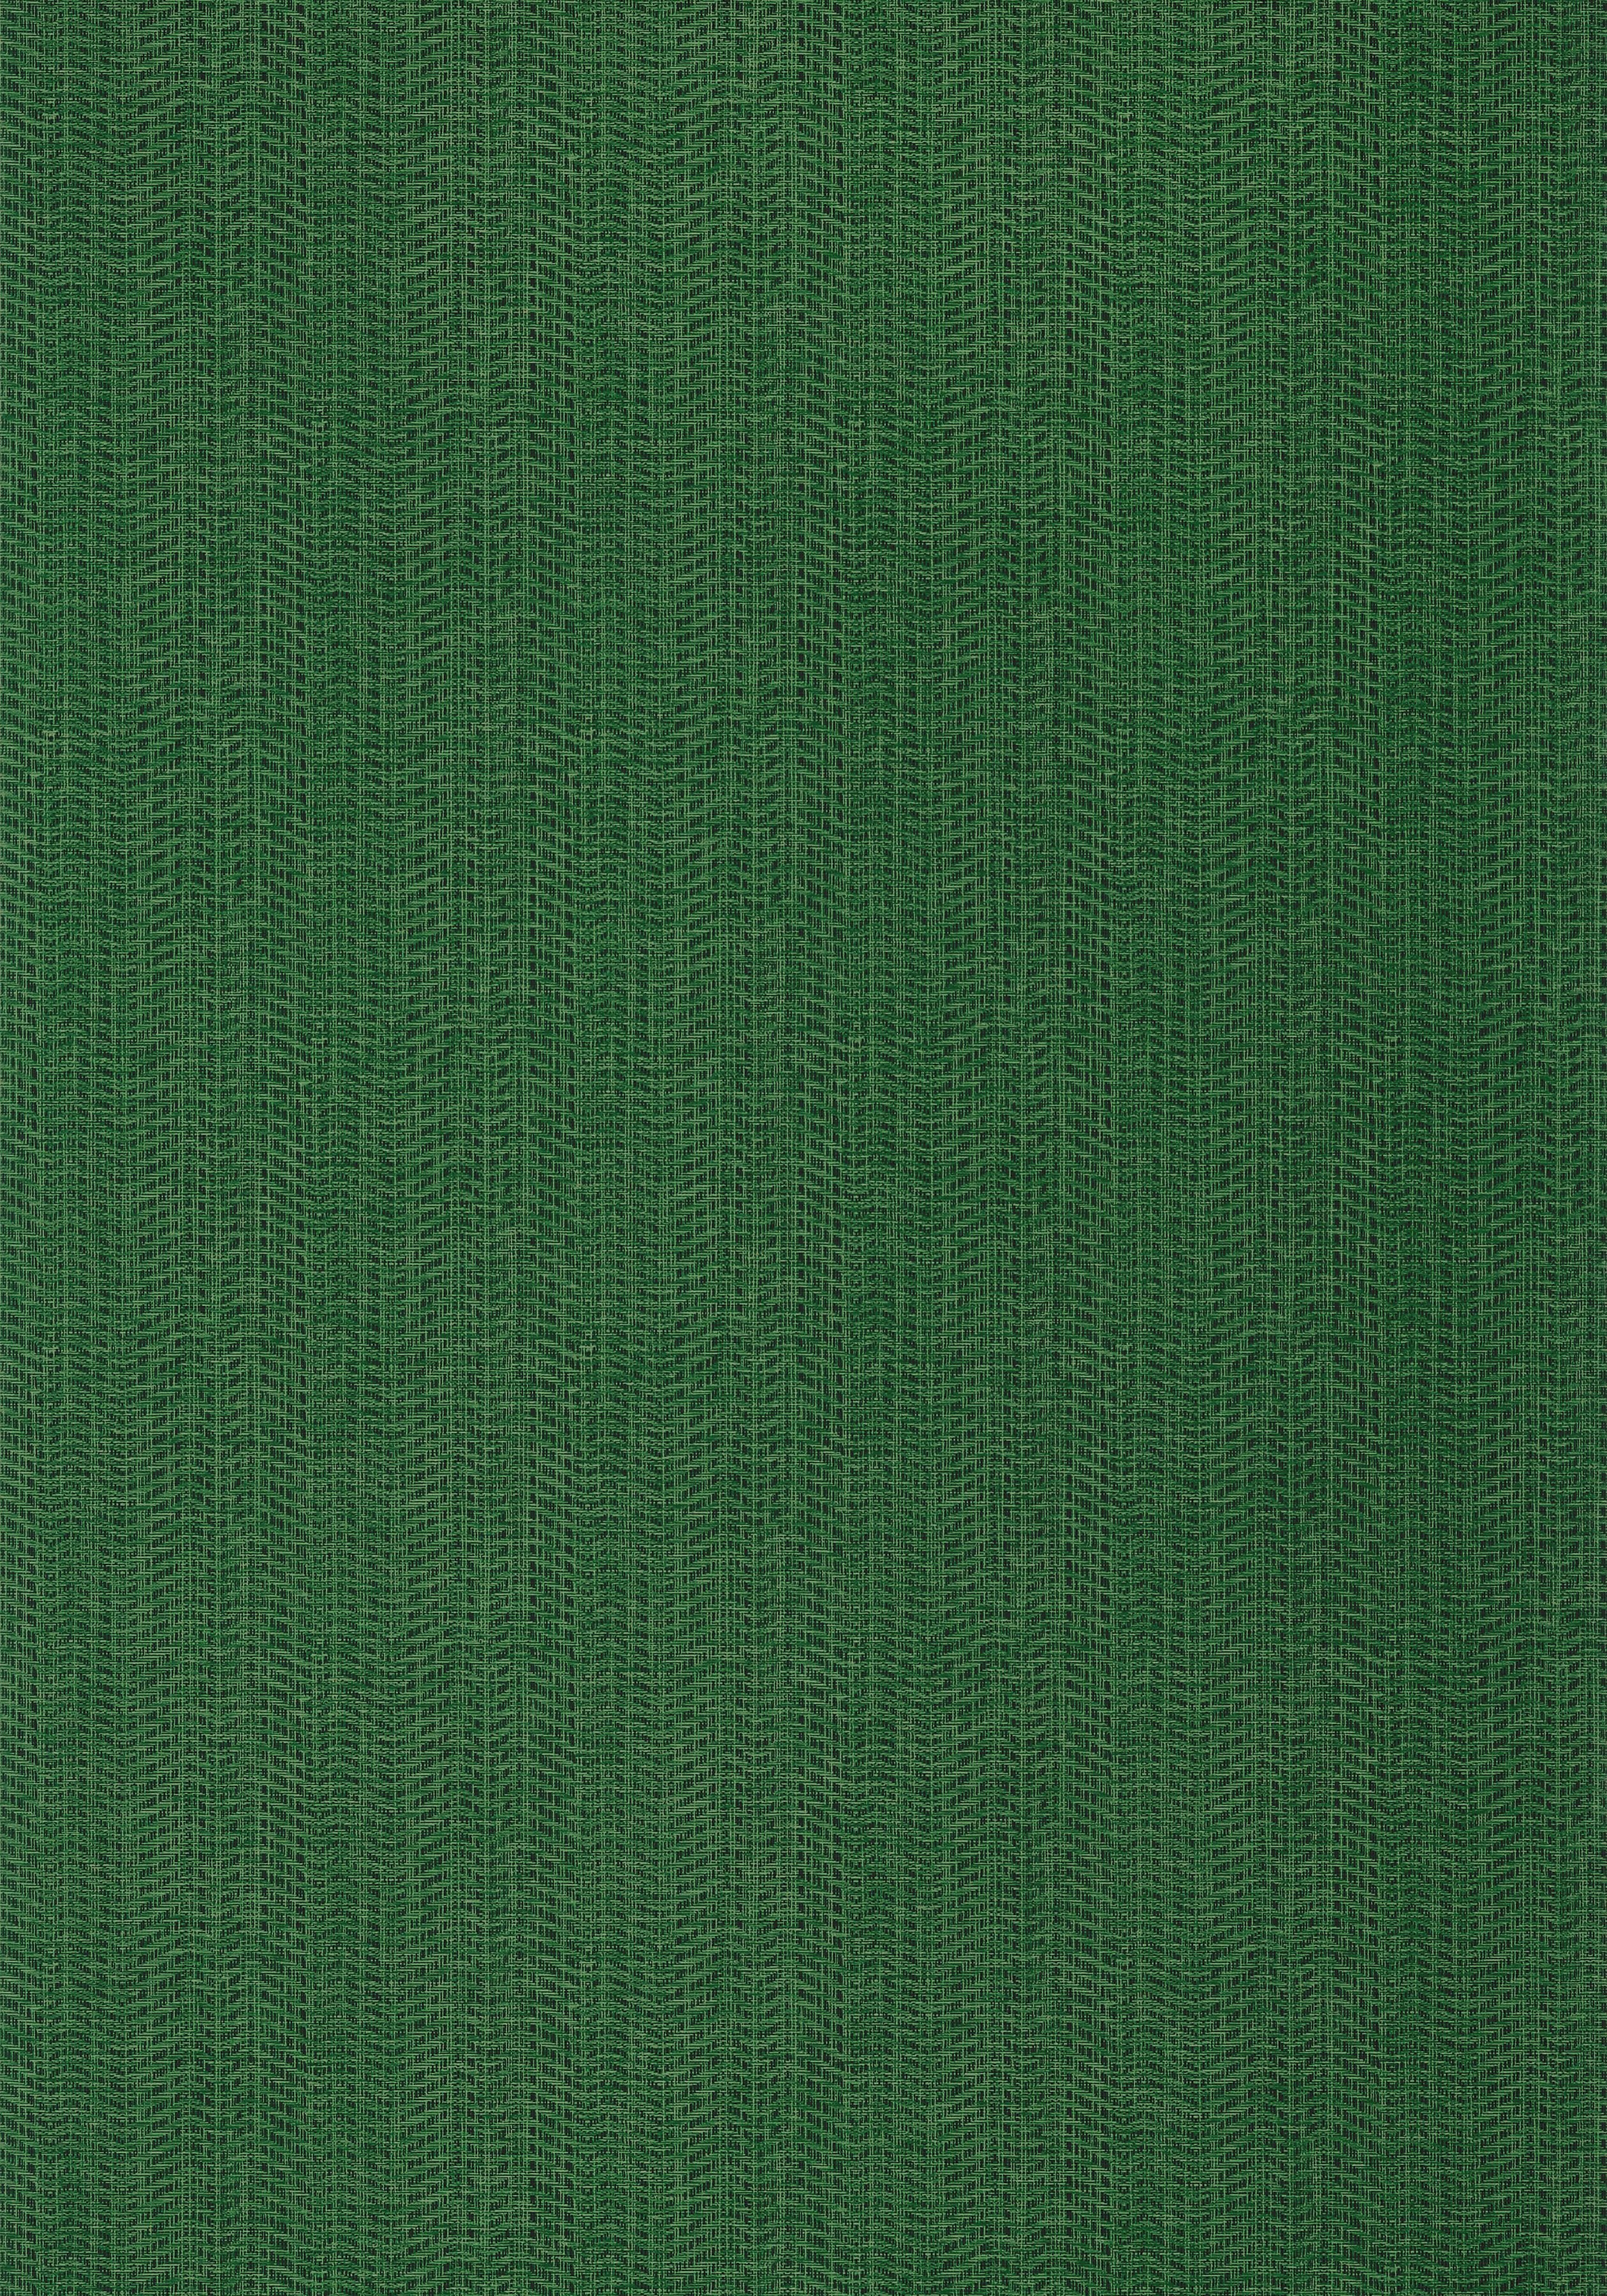 Цвет сукно. Зеленая ткань. Текстура ткани. Зеленый цвет ткани. Зеленое сукно.